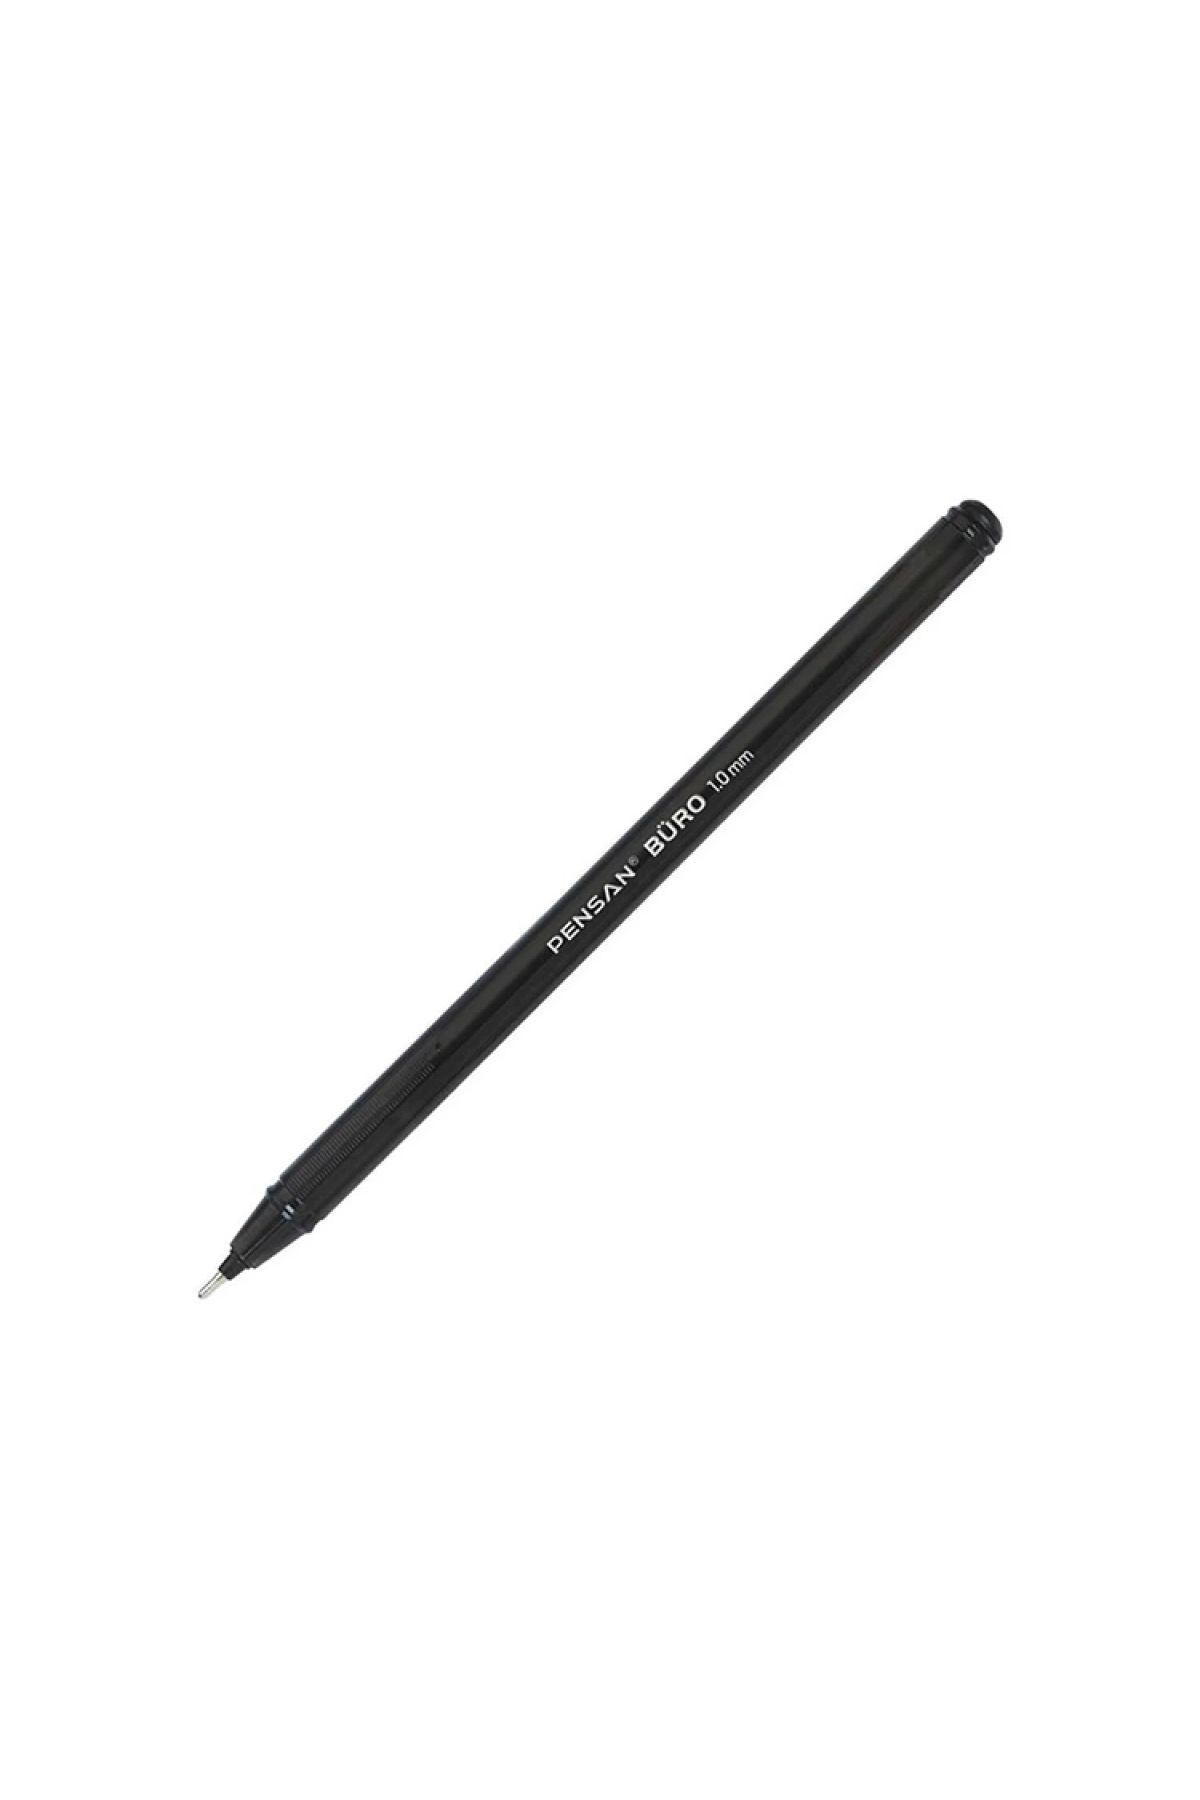 Pensan Büro Tükenmez Kalem 1.0 Mm Siyah